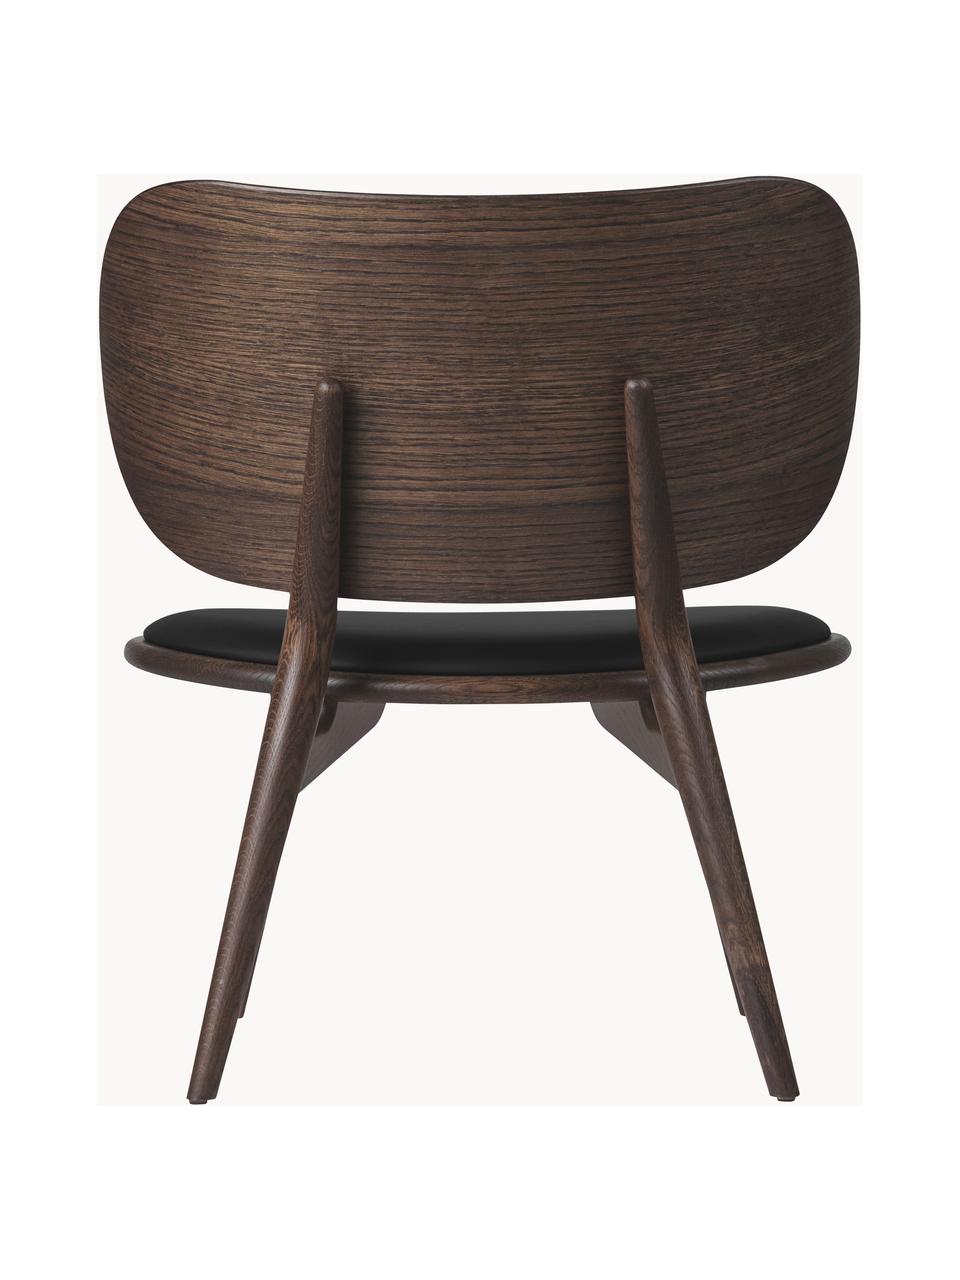 Kožená židle s dřevěnými nohami Rock, ručně vyrobená, Černá, tmavé dubové dřevo, Š 65 cm, H 69 cm